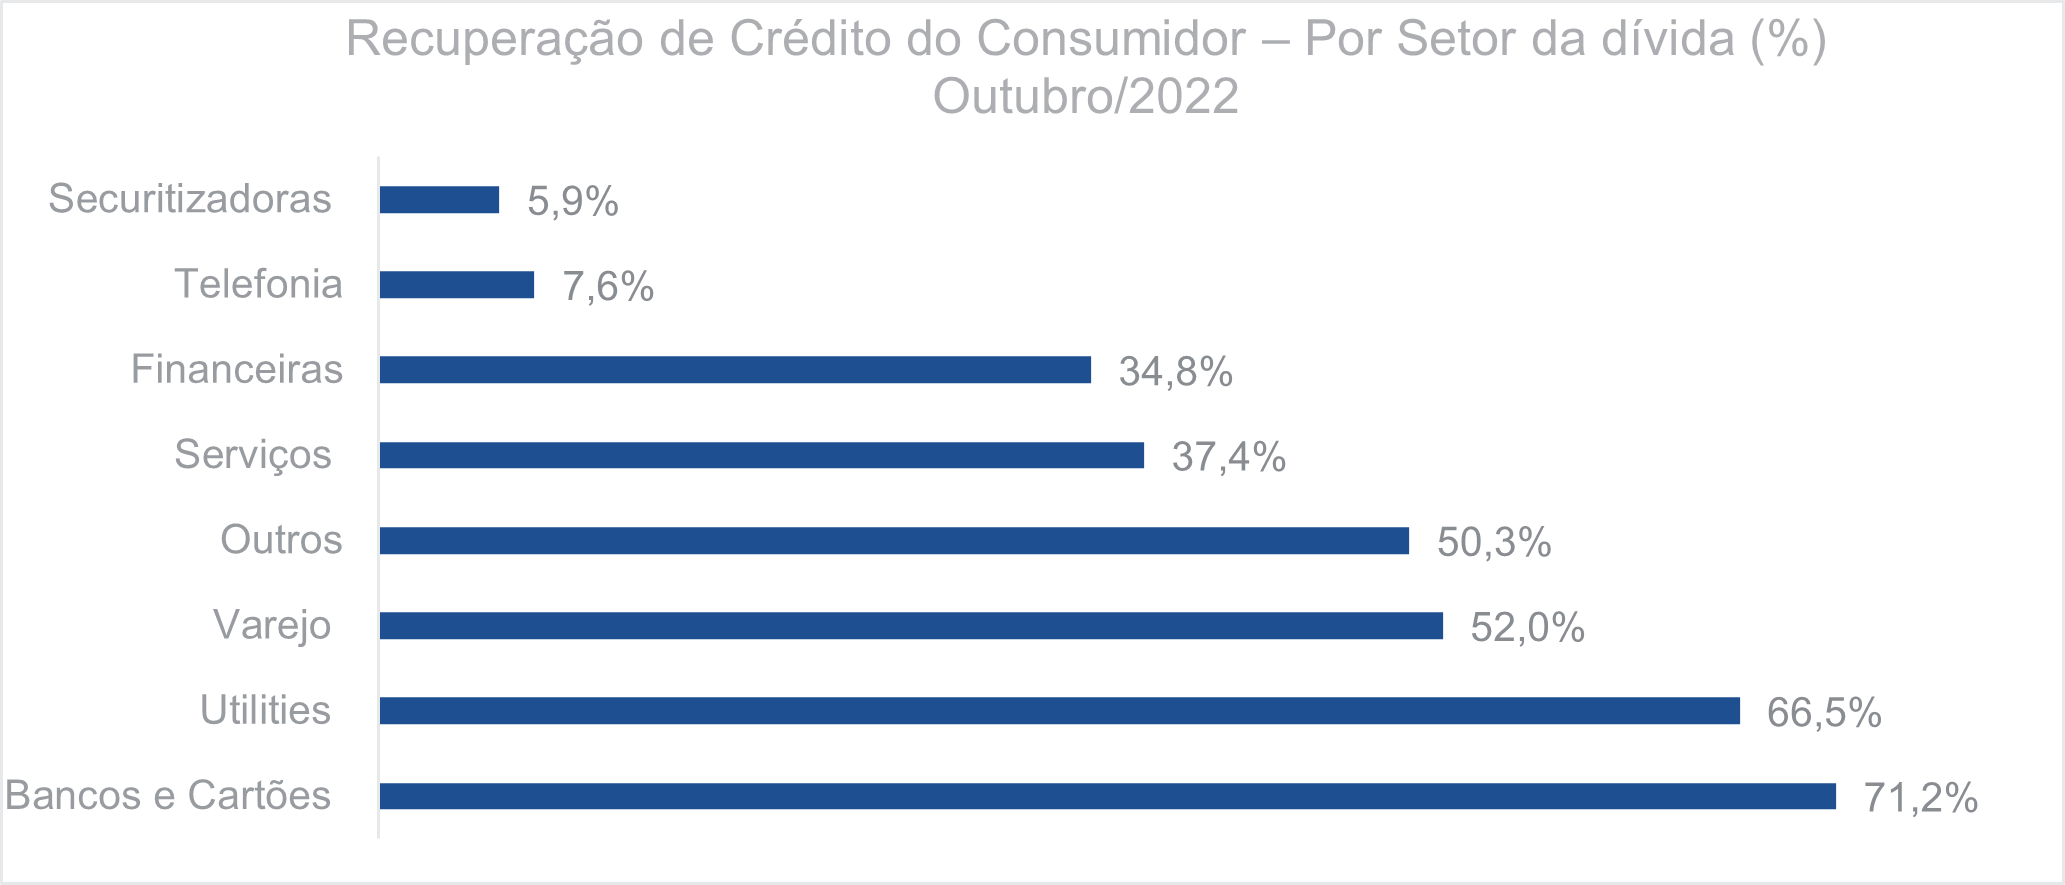 Recuperação de crédito do consumidor Por setor da dívida Outubro 2022